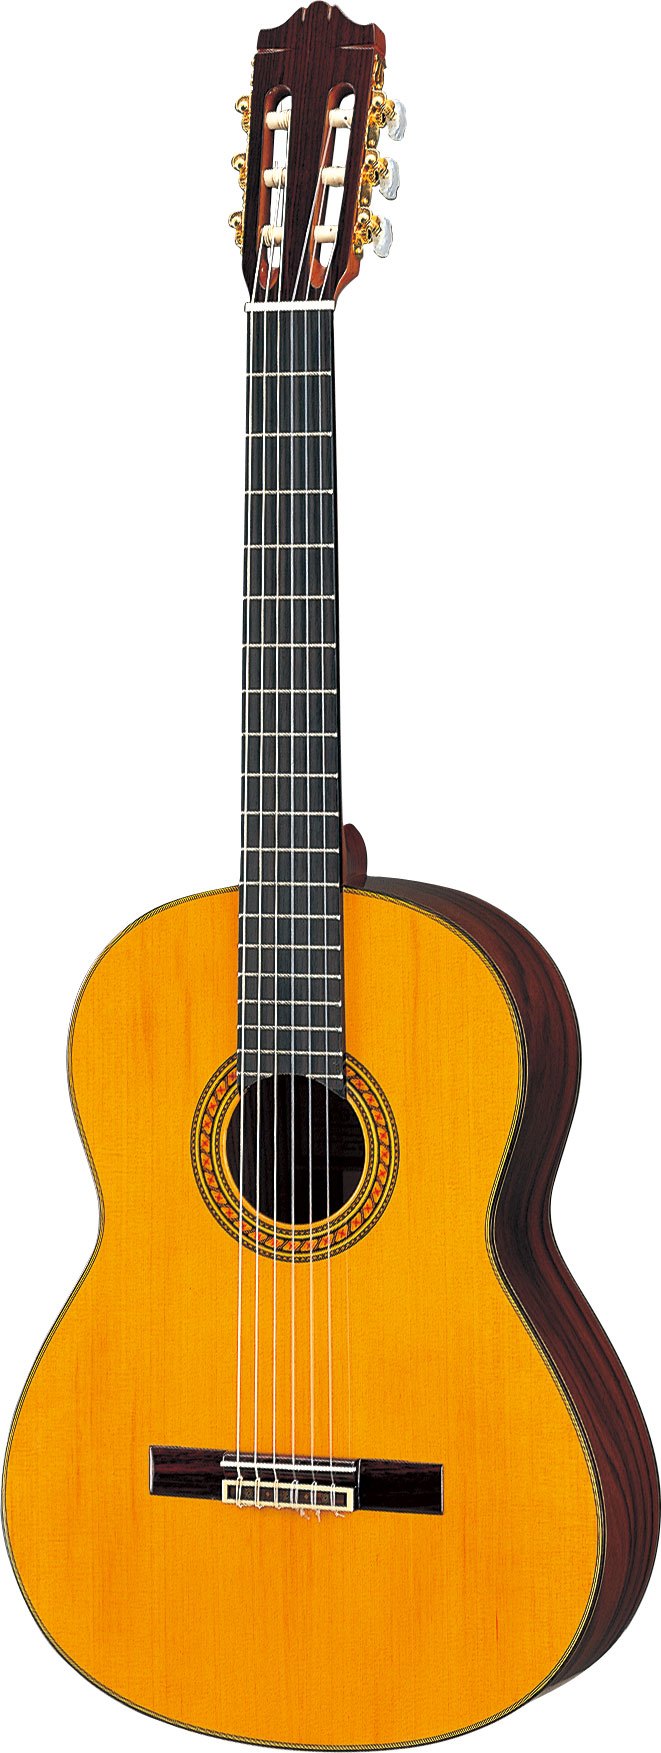 ヤマハ | CG151C - クラシックギター・ナイロン弦ギター - 概要